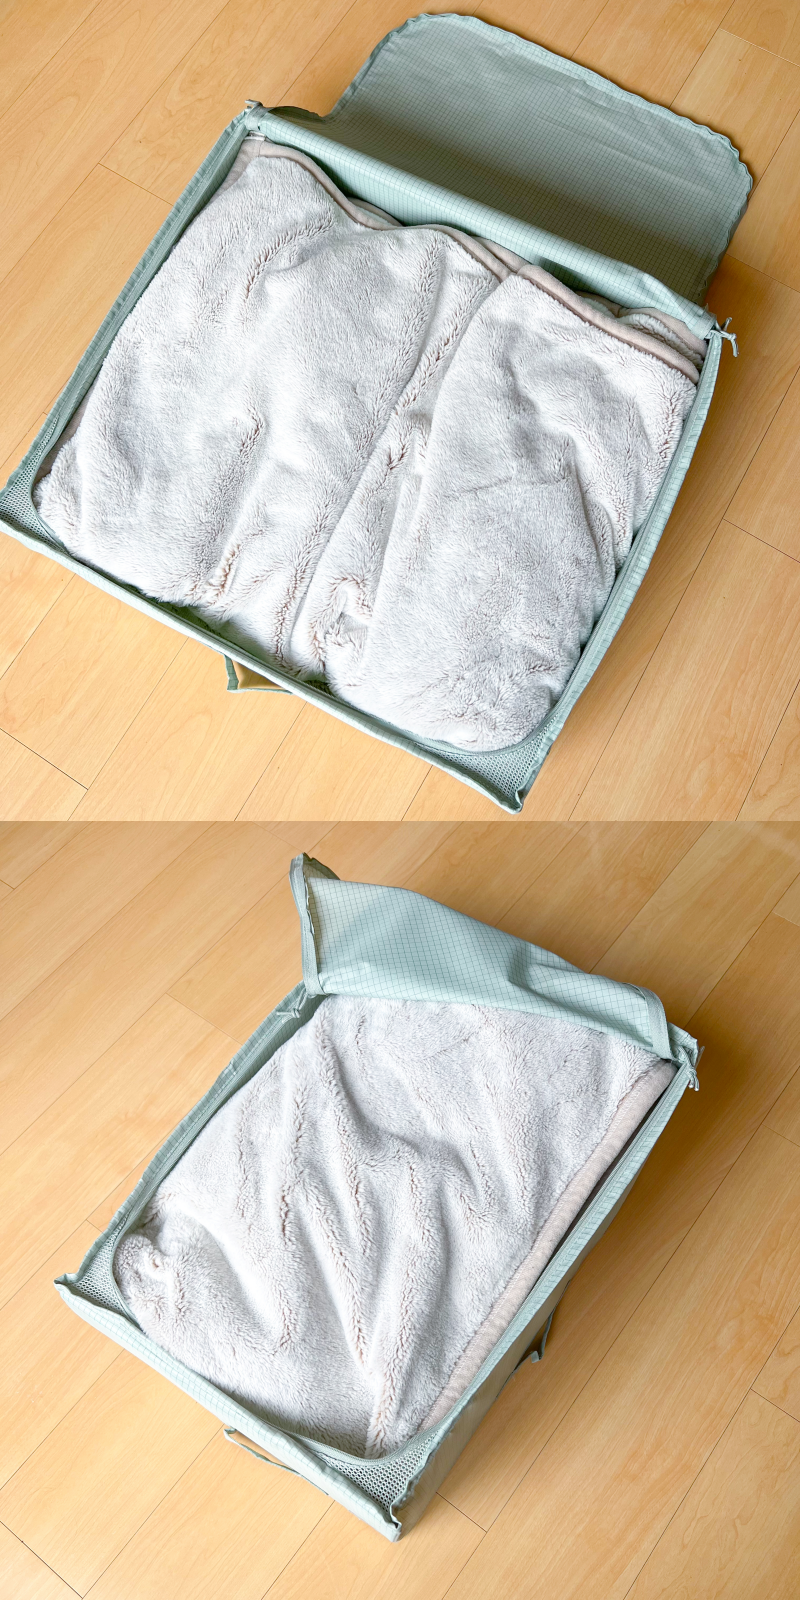 二枚の写真には、畳まれたタオルが入った開いたスーツケースが床に置かれています。